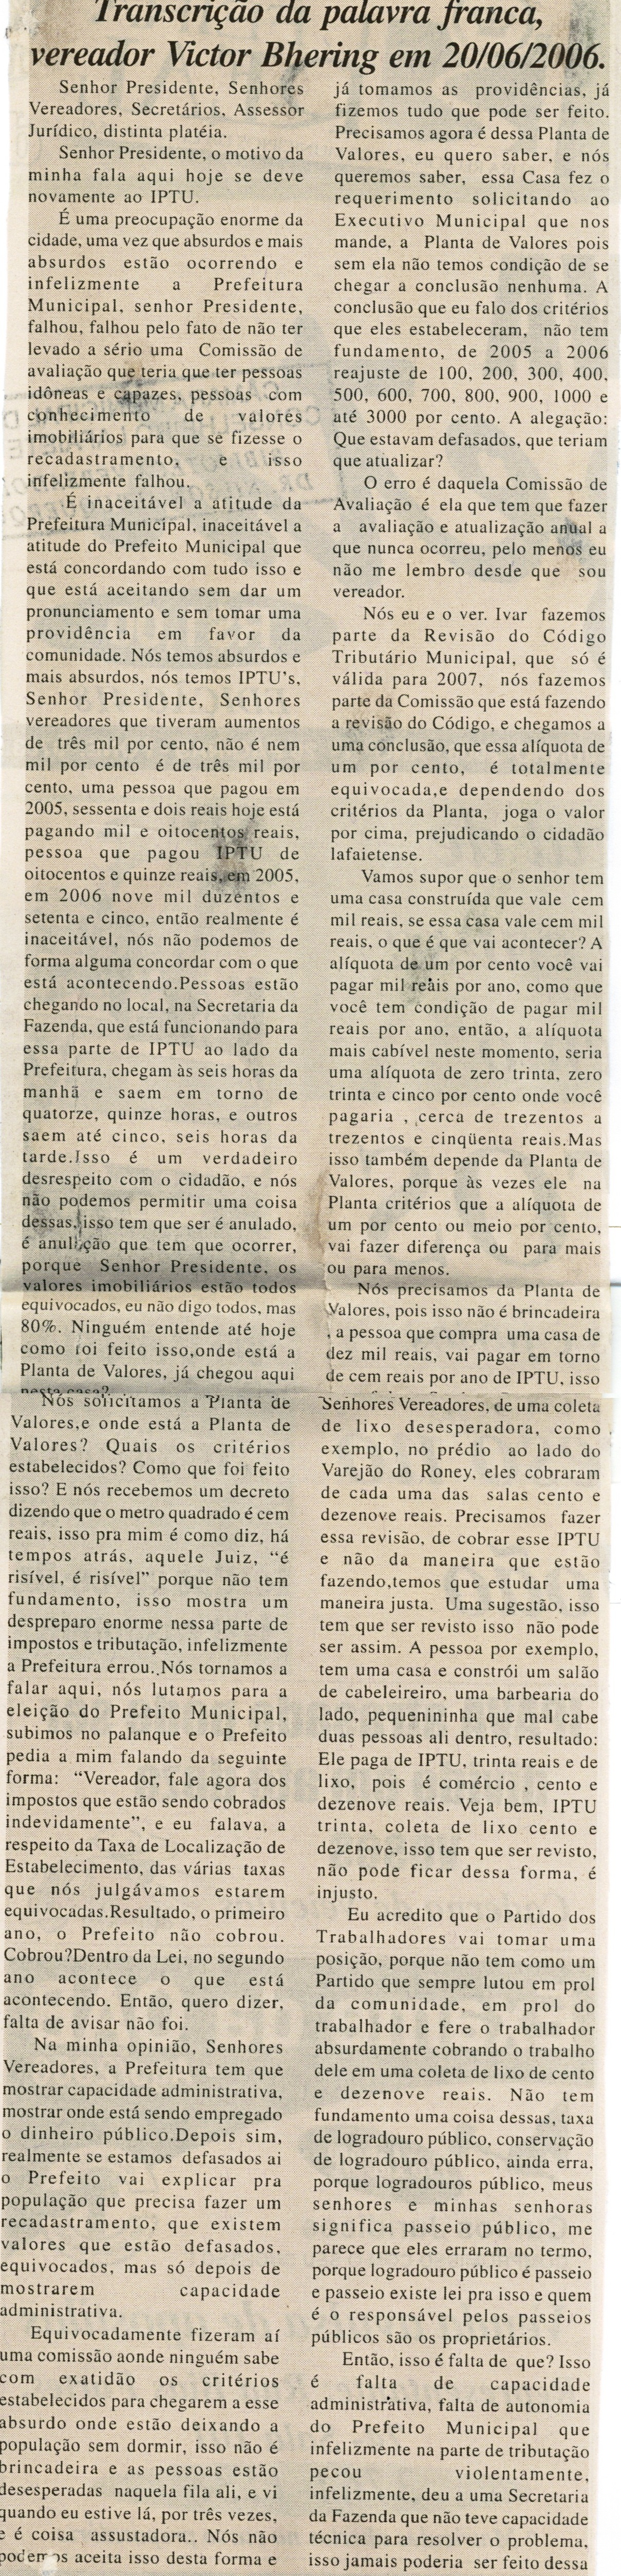 Transcrição da palavra franca, vereador Victor Bhering em 20/06/2006. Jornal Nova Gazeta, 24 jun. 2006, 418ª ed., p. 02.